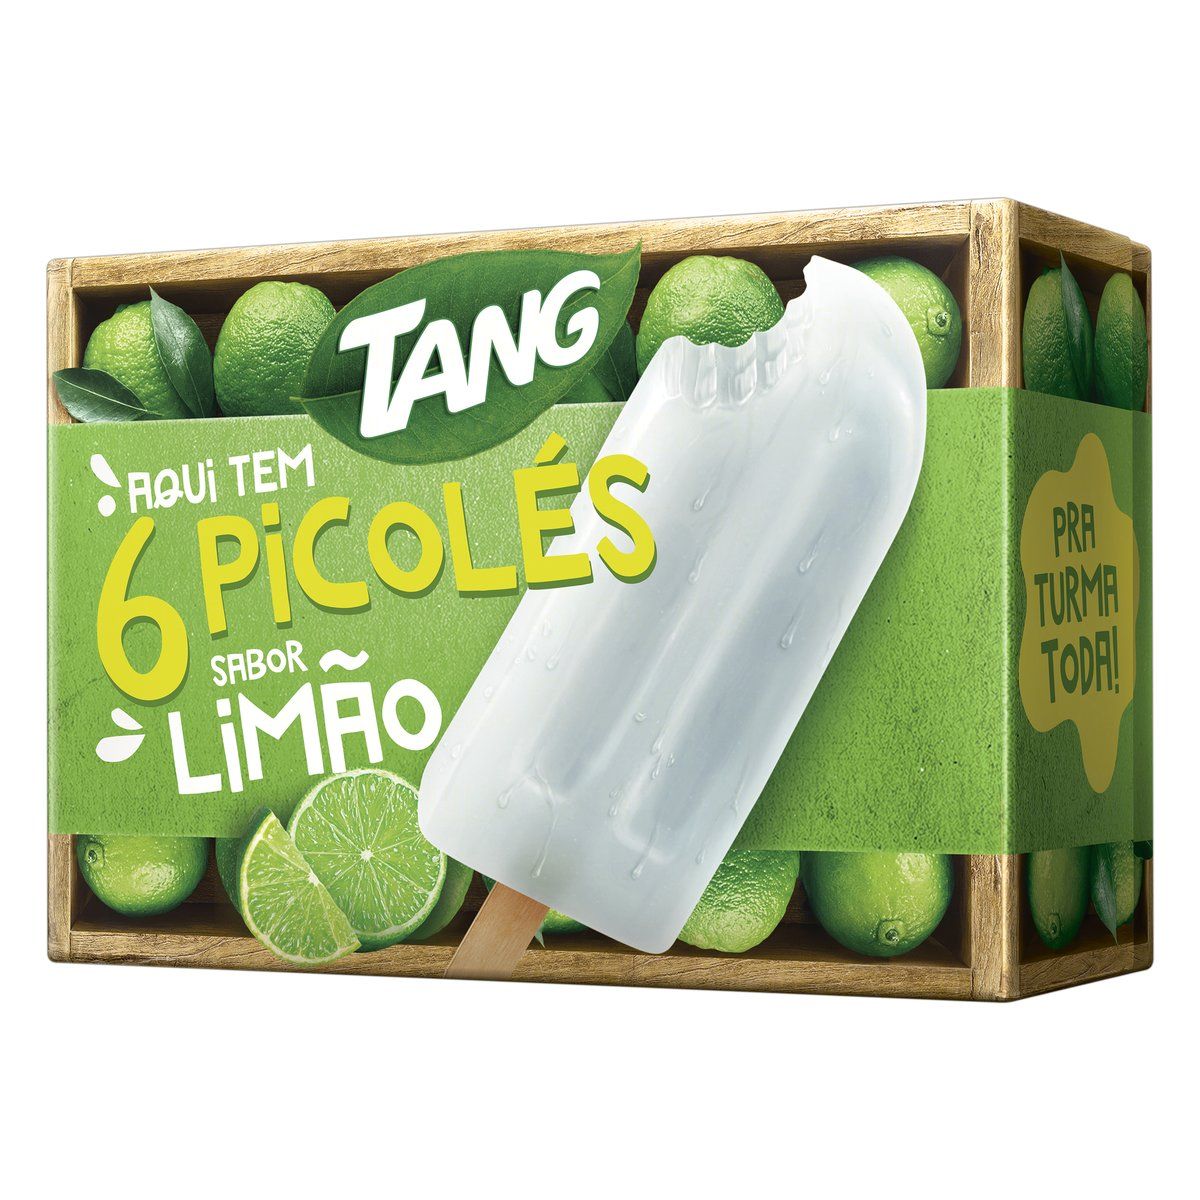 Pack Picolé Limão Tang Caixa 330g 6 Unidades